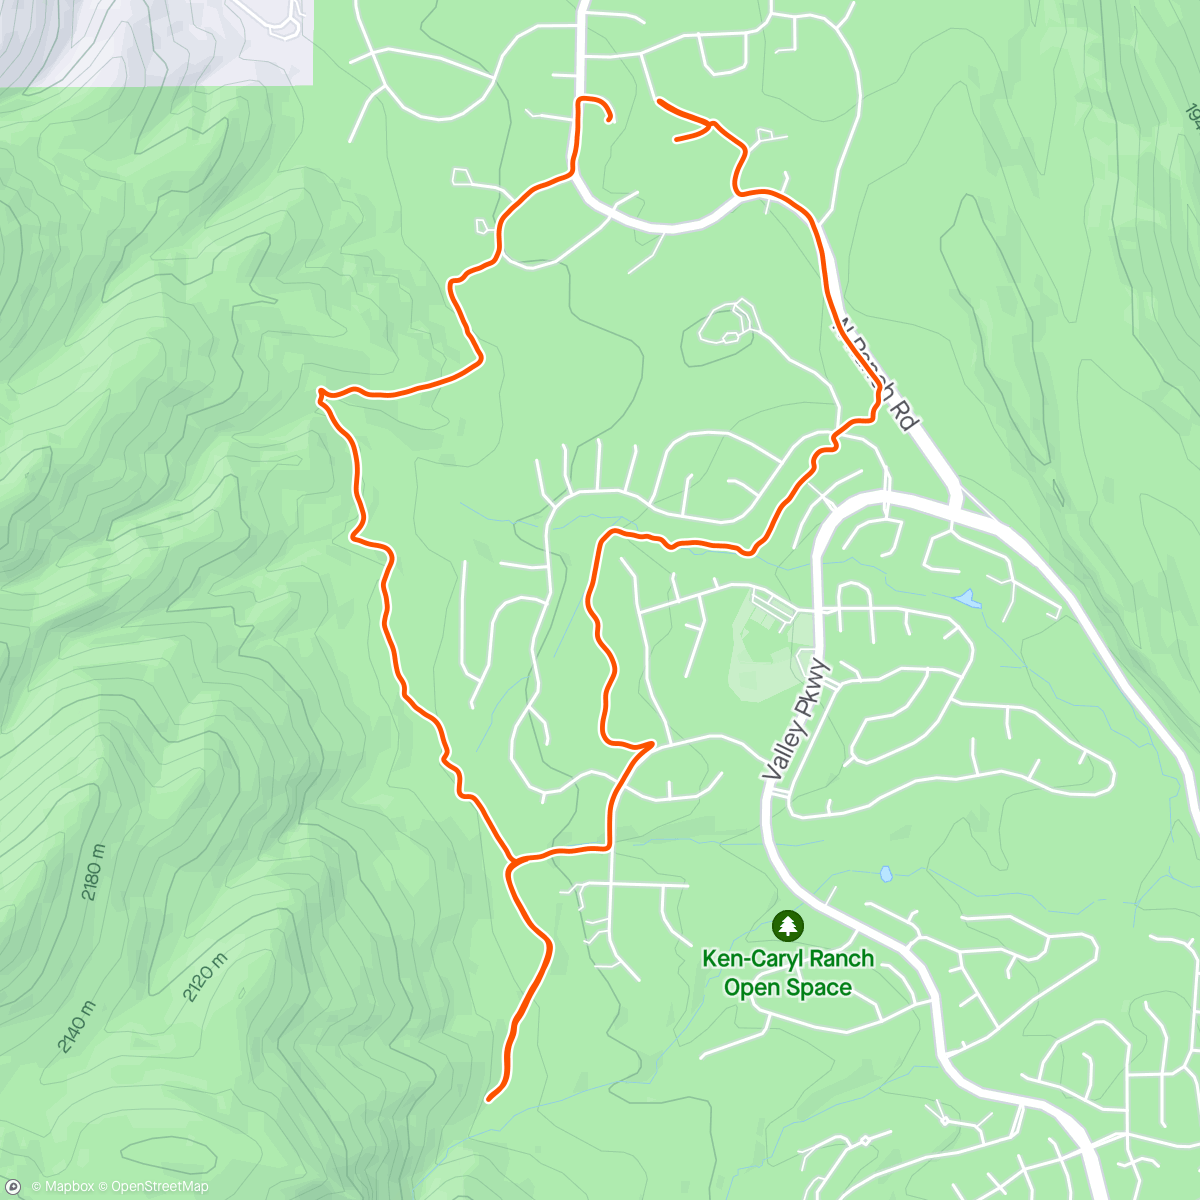 Mappa dell'attività Dusty trail run